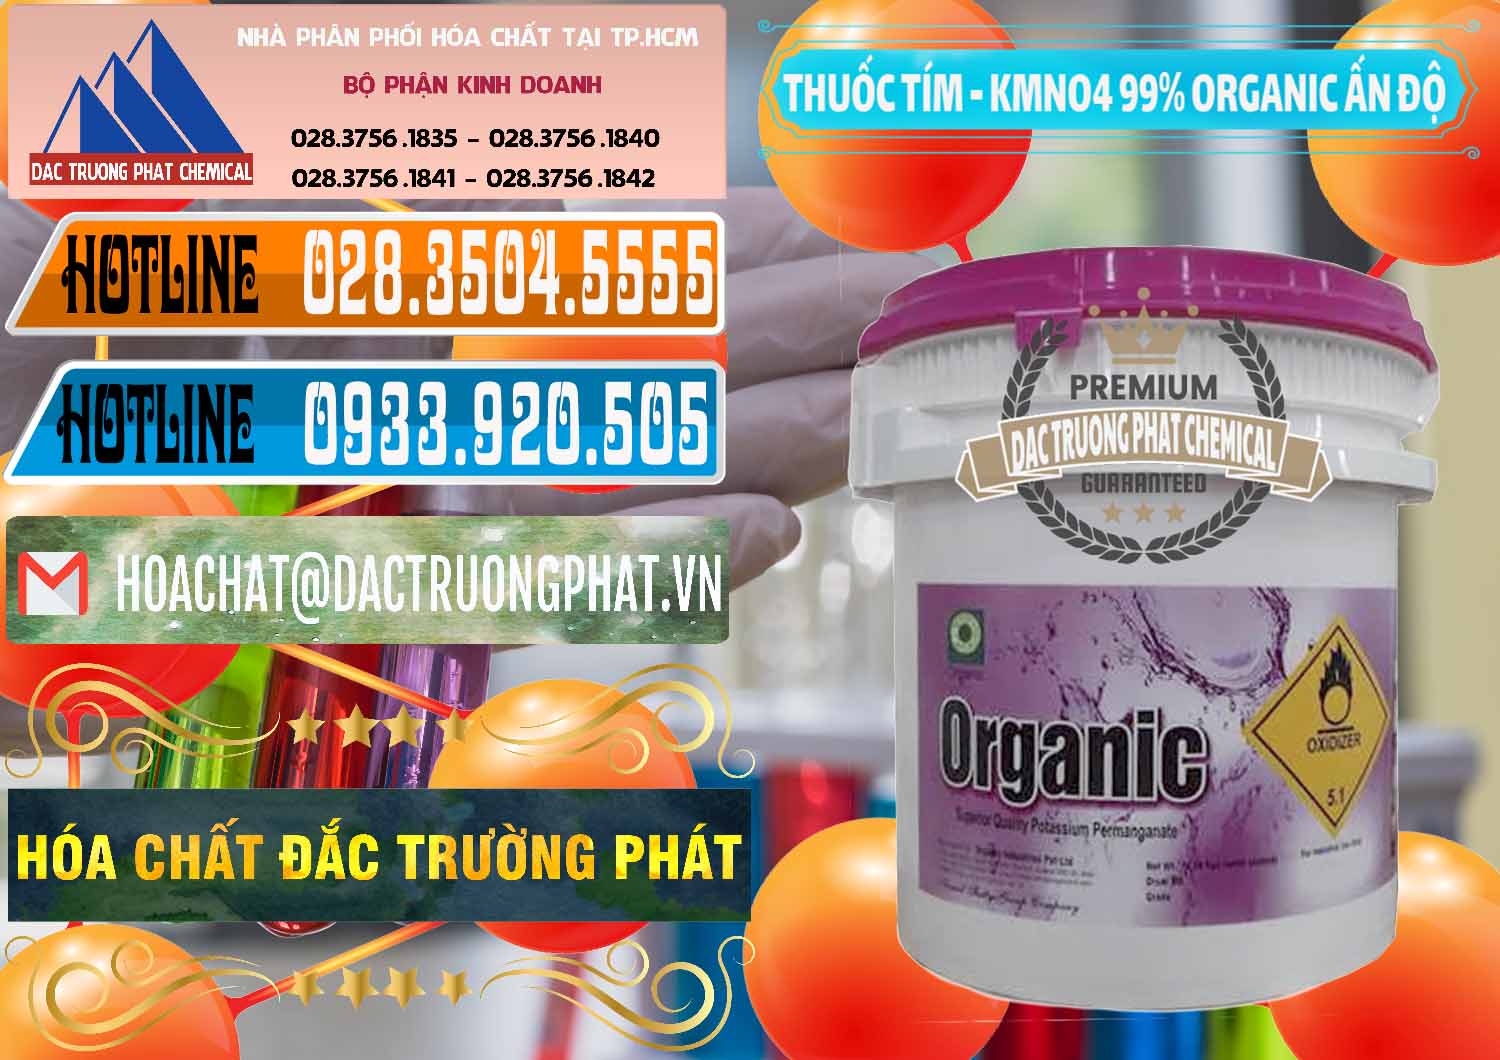 Cty bán _ phân phối Thuốc Tím - KMNO4 99% Organic Ấn Độ India - 0216 - Nơi phân phối & cung cấp hóa chất tại TP.HCM - stmp.net